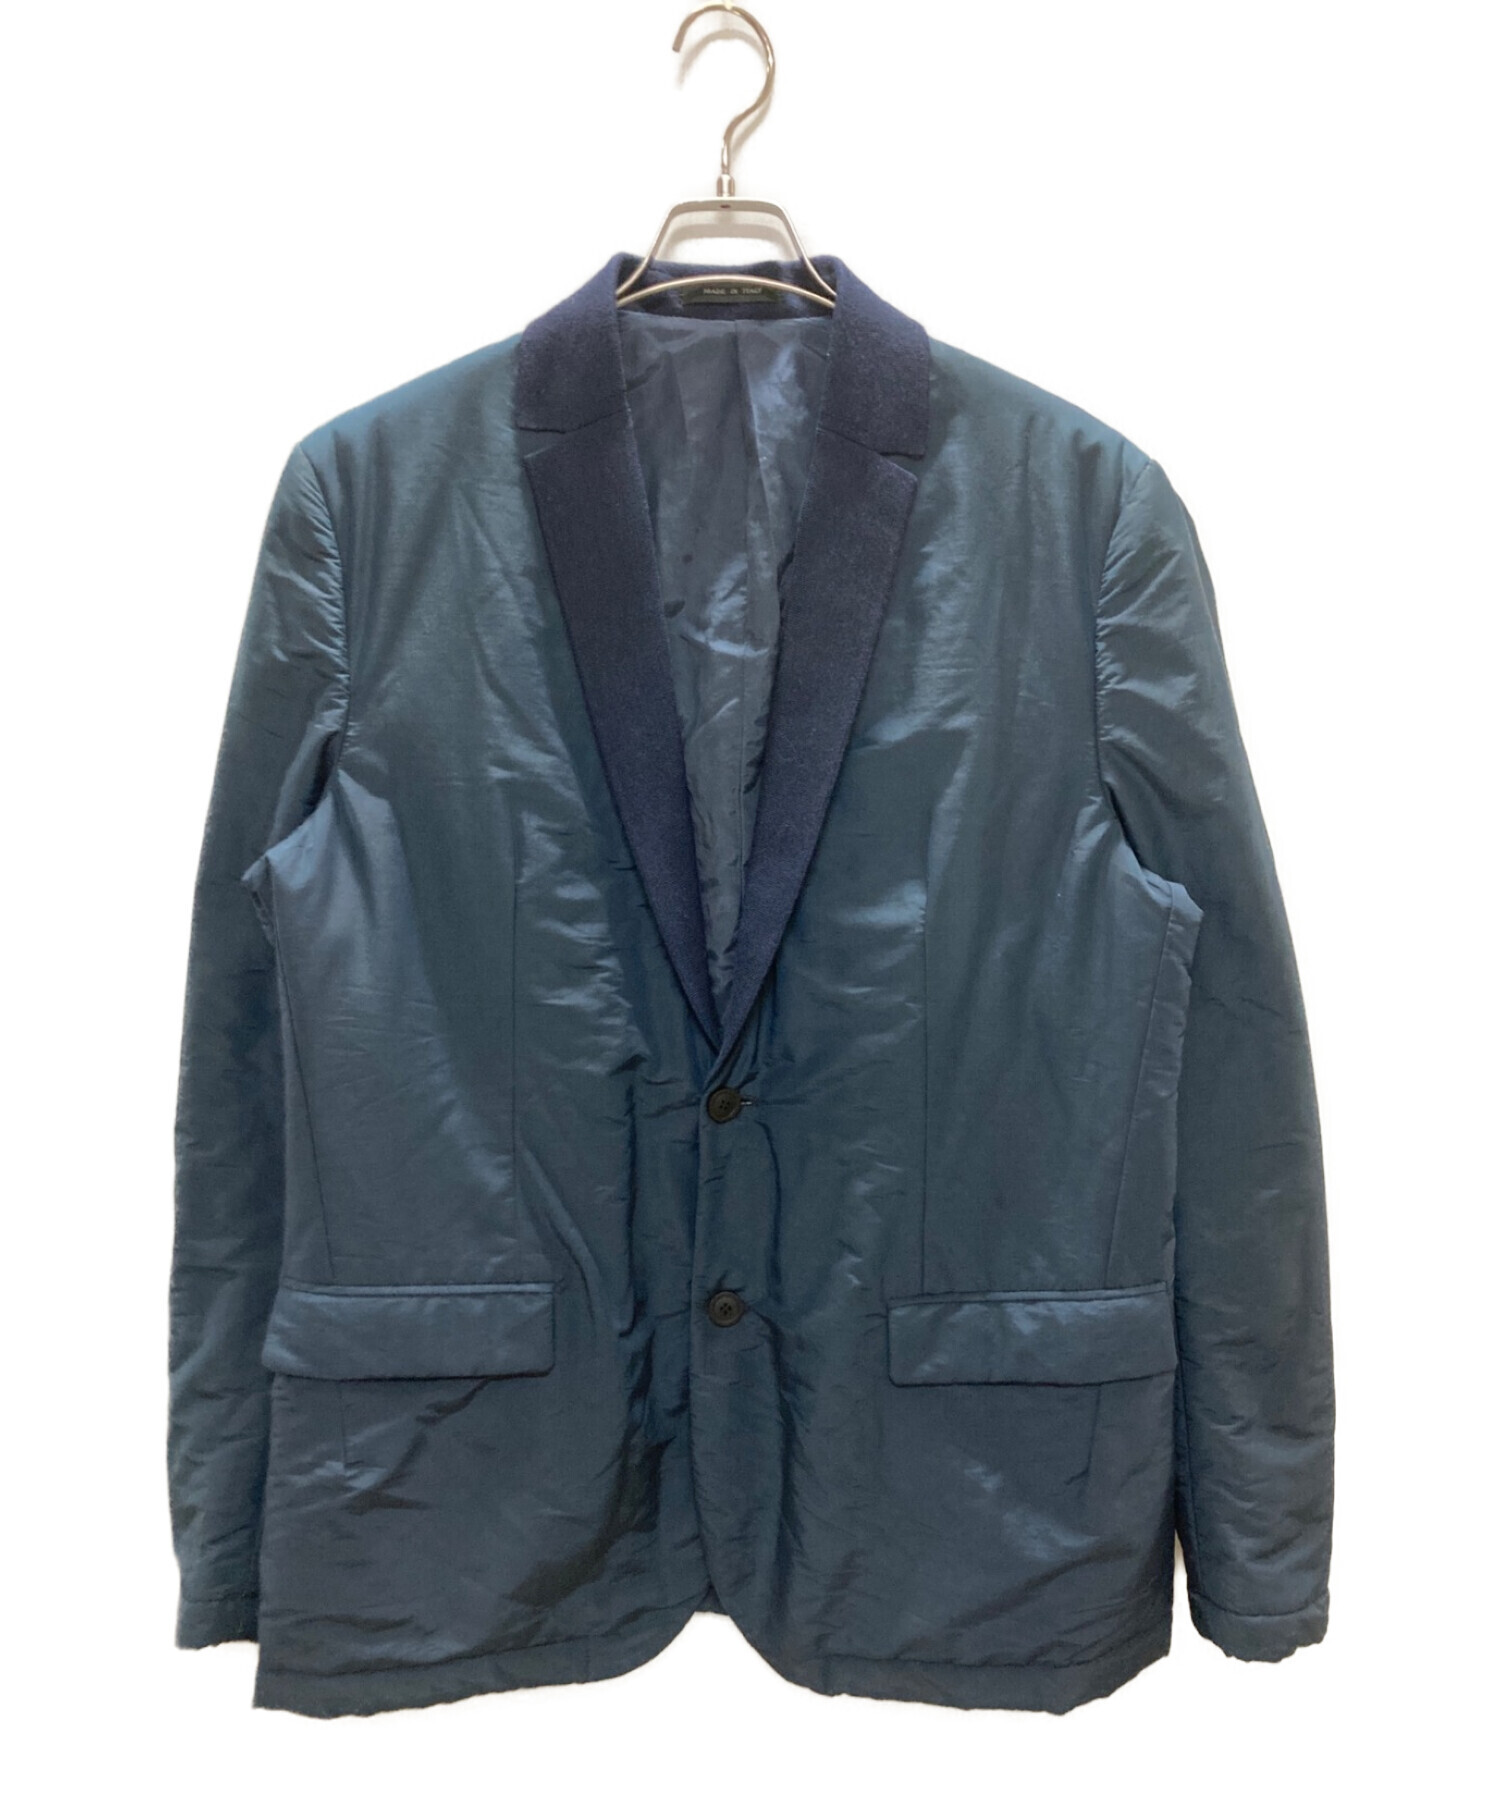 袖丈約64cmEMPORIO ARMANI (エンポリオアルマーニ) 中綿テーラードジャケット ネイビー サイズ:54 6000円